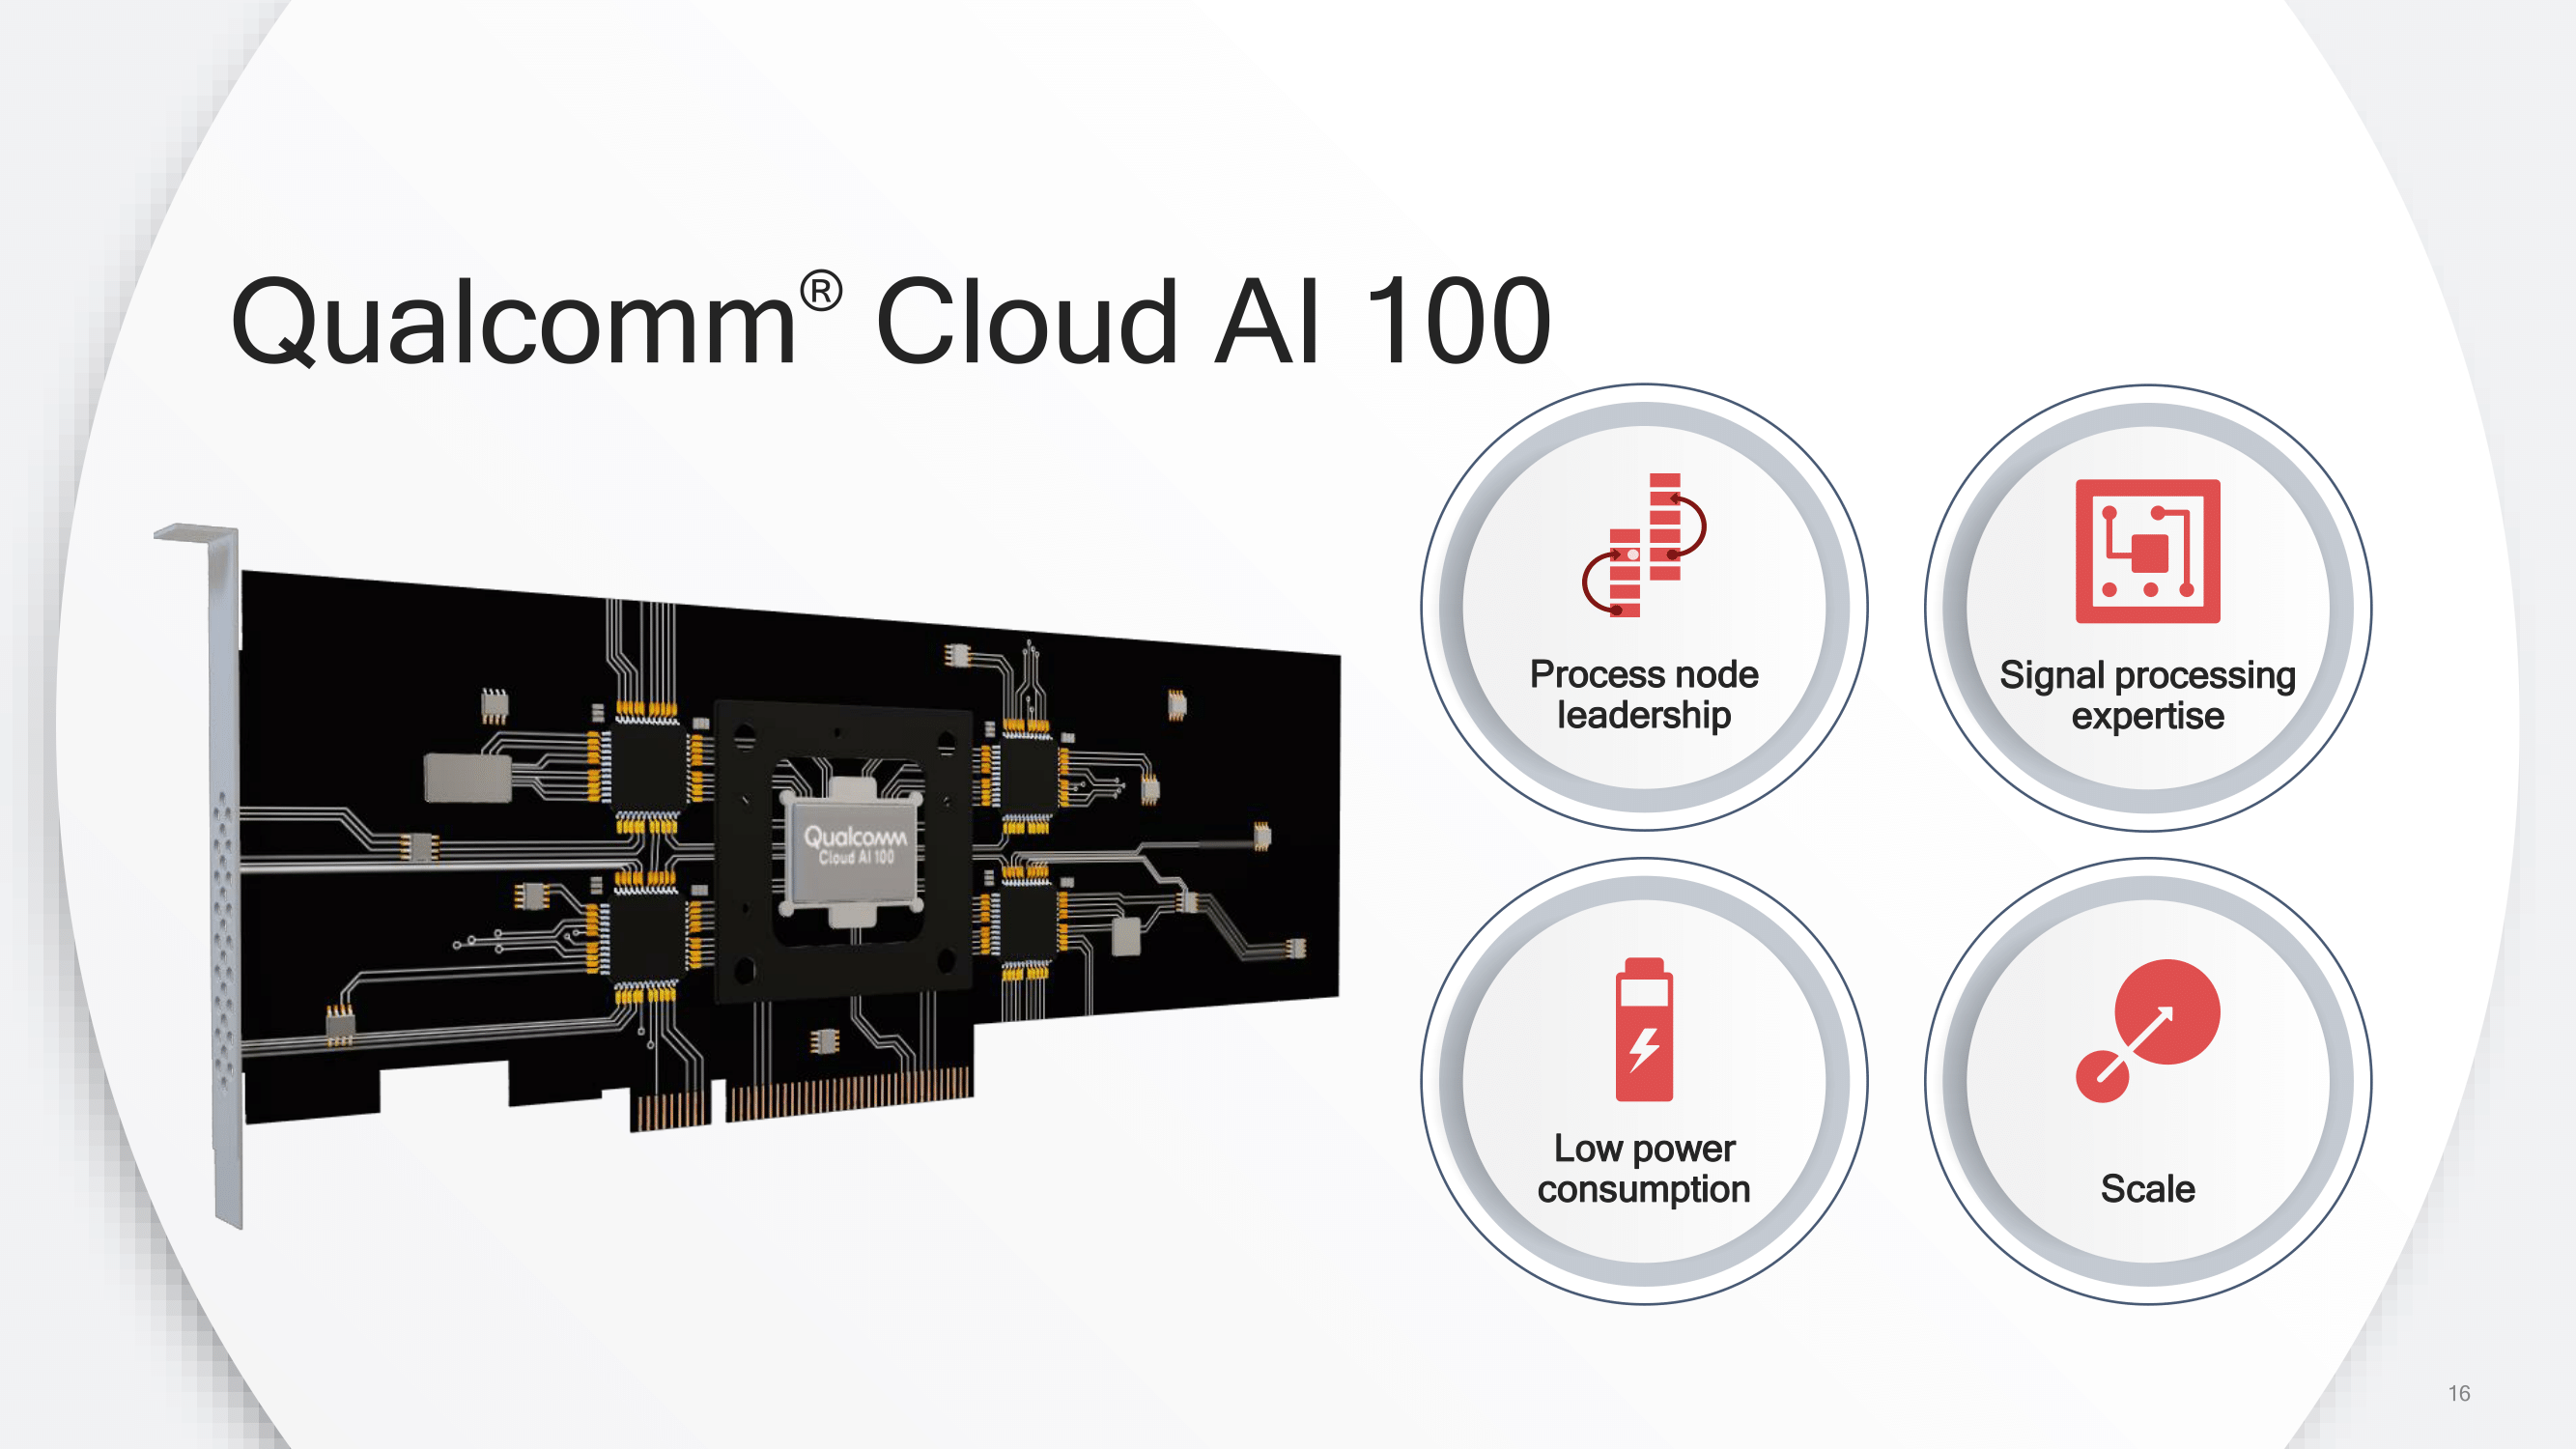 Qualcomm Cloud AI 100